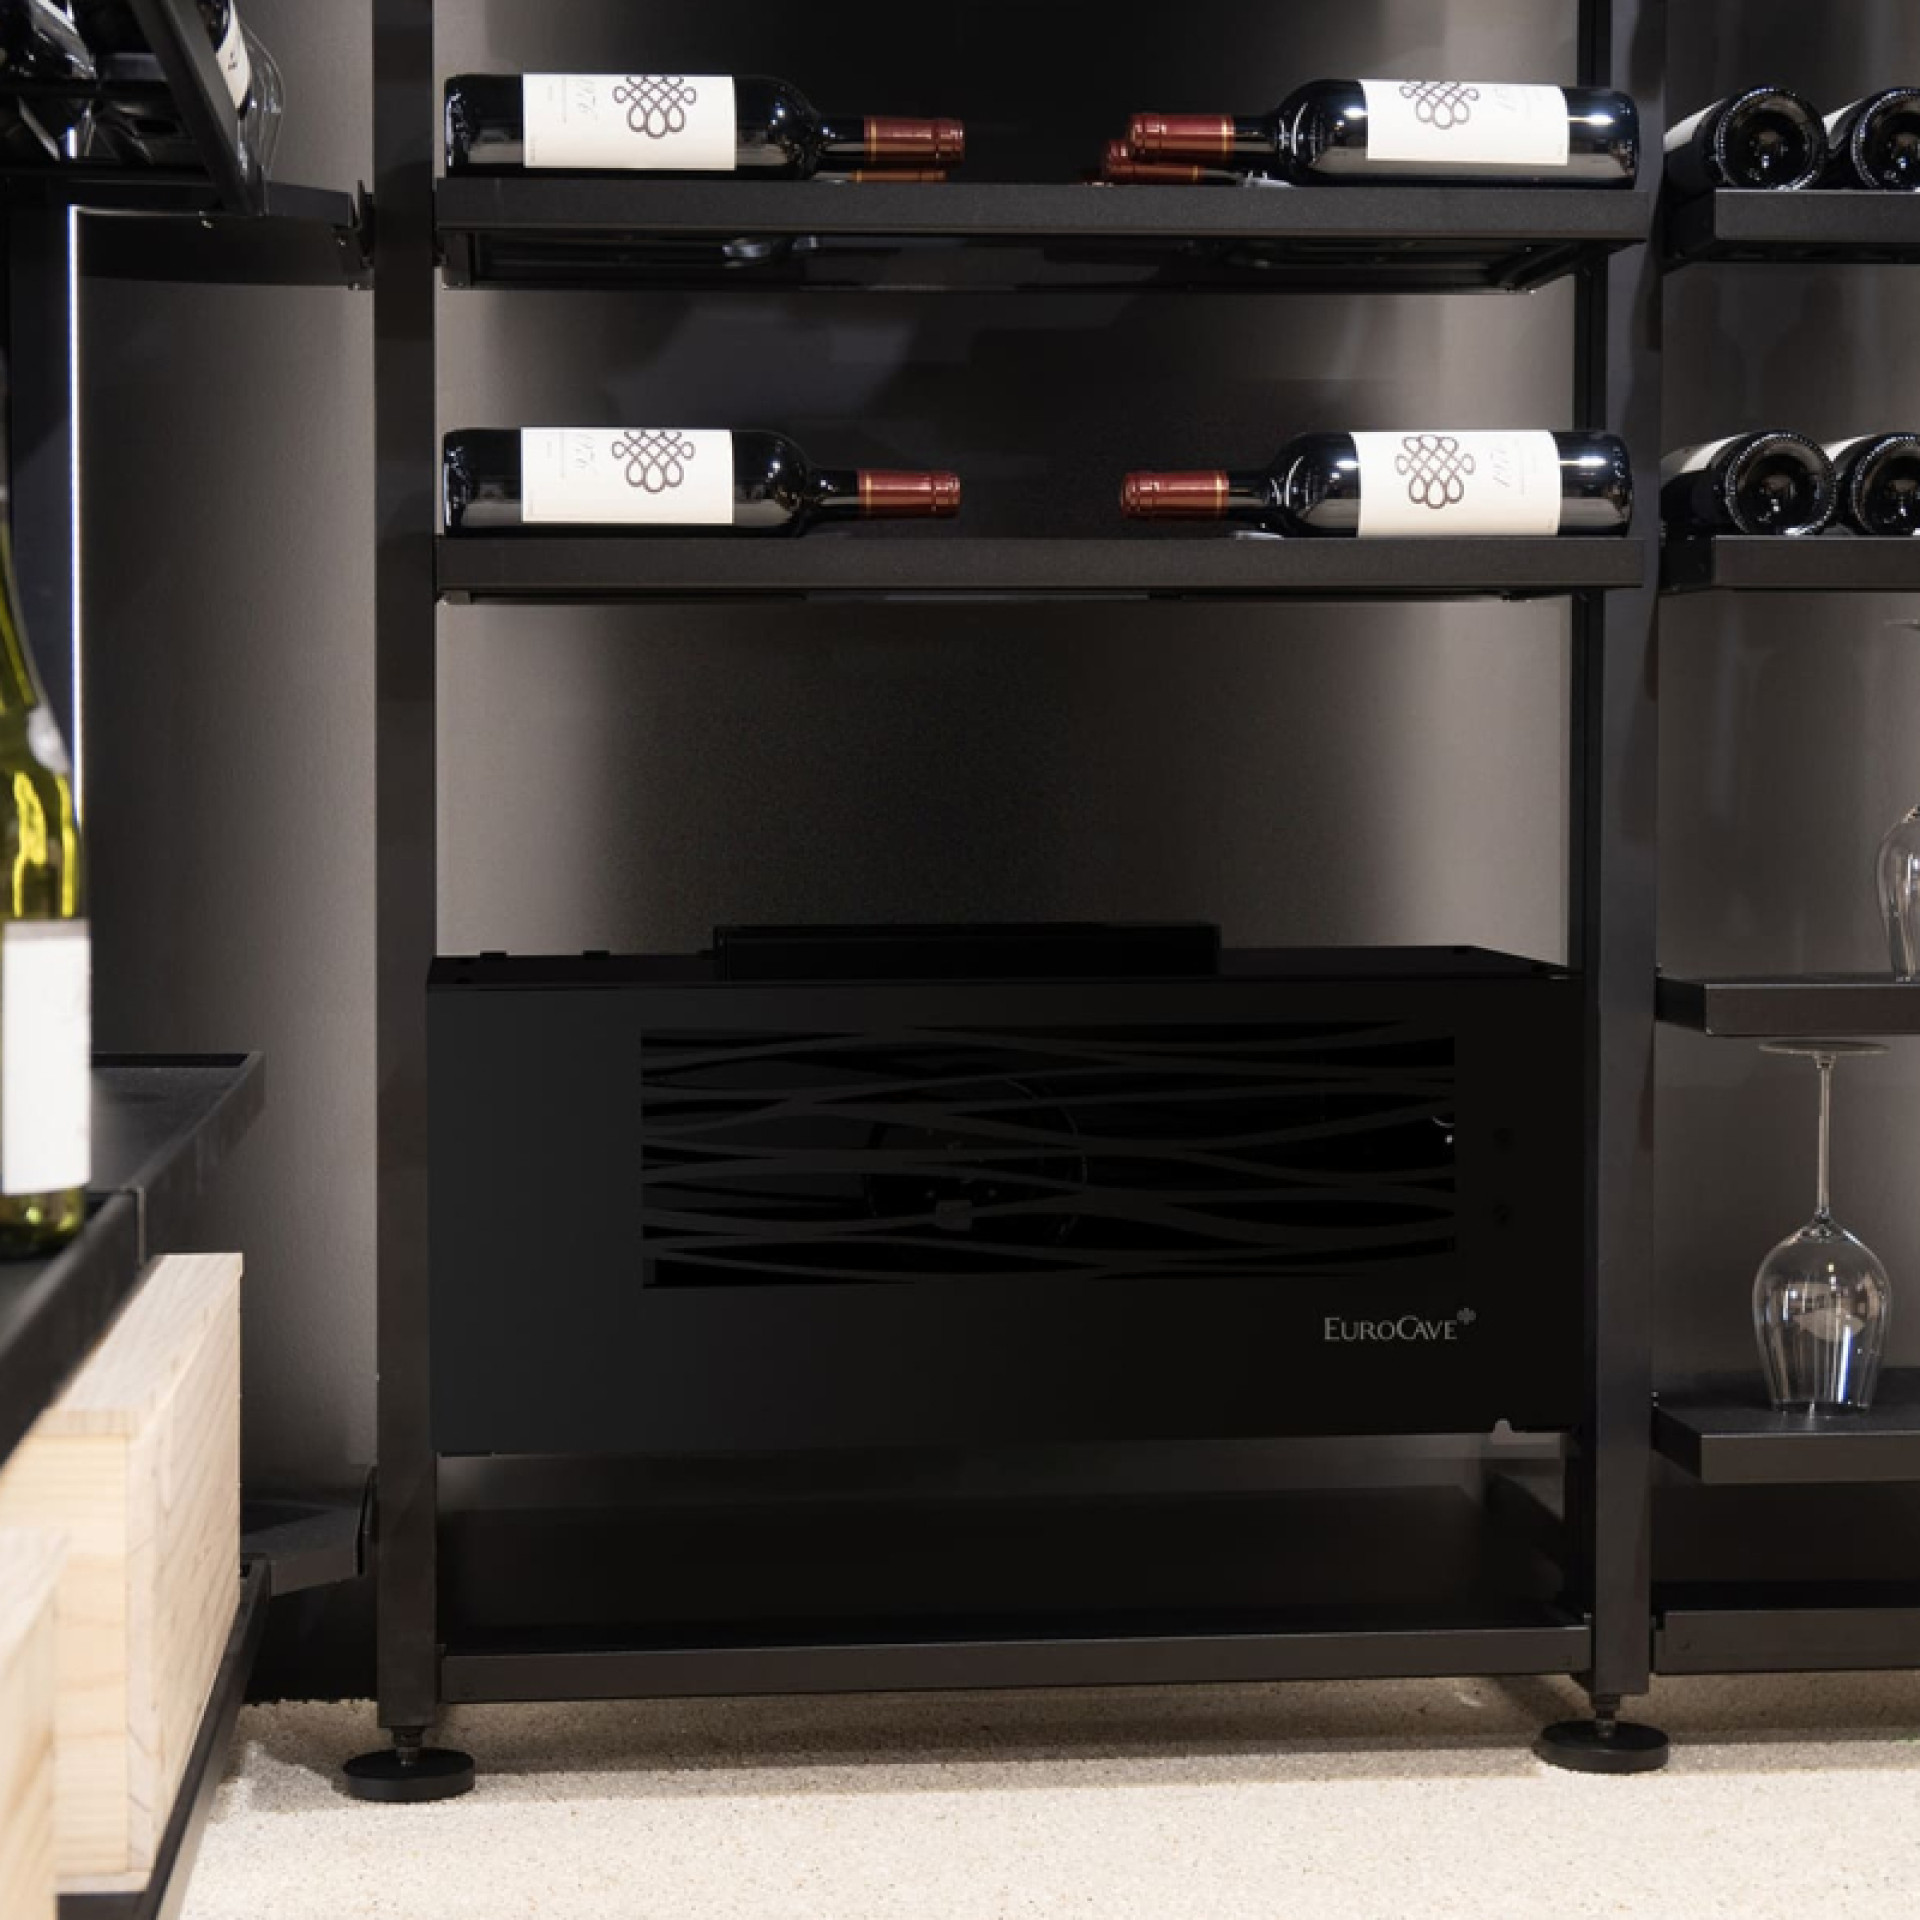 Kleine Weinkeller-Klimaanlage in glänzend schwarzem Design, Wasser-Split-System. Kompakt für eine einfache Installation, an der Wand befestigt oder auf dem Boden platziert.